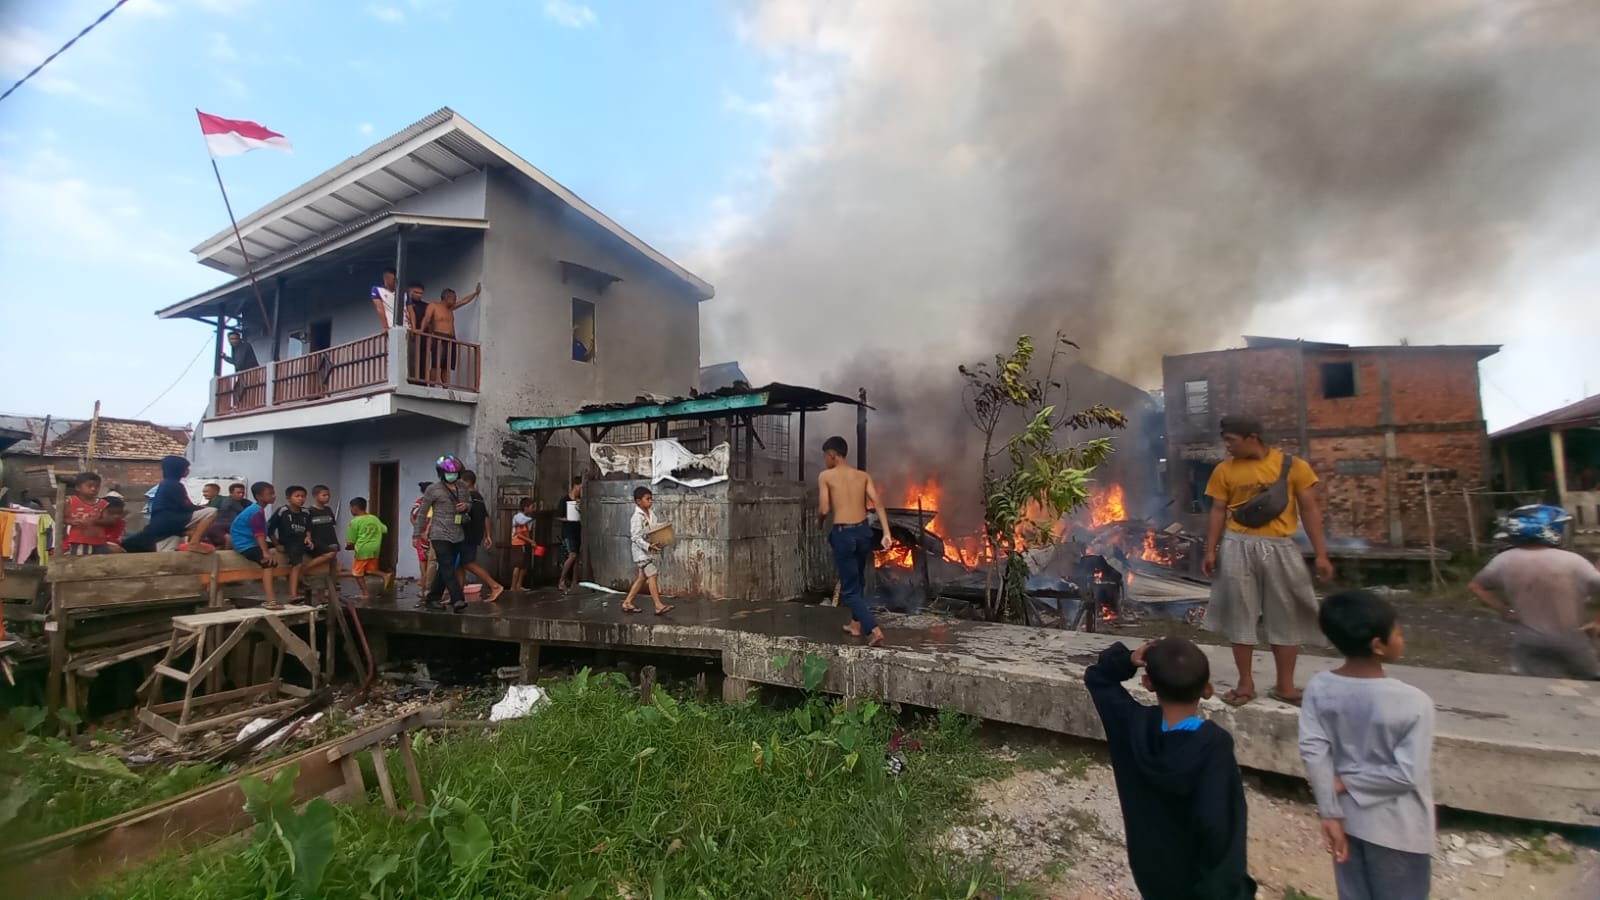 19 Rumah di Tepi Sungai Kedukan Seberang Ulu Palembang Hangus Terbakar, 33 KK Kehilangan Tempat Tinggal